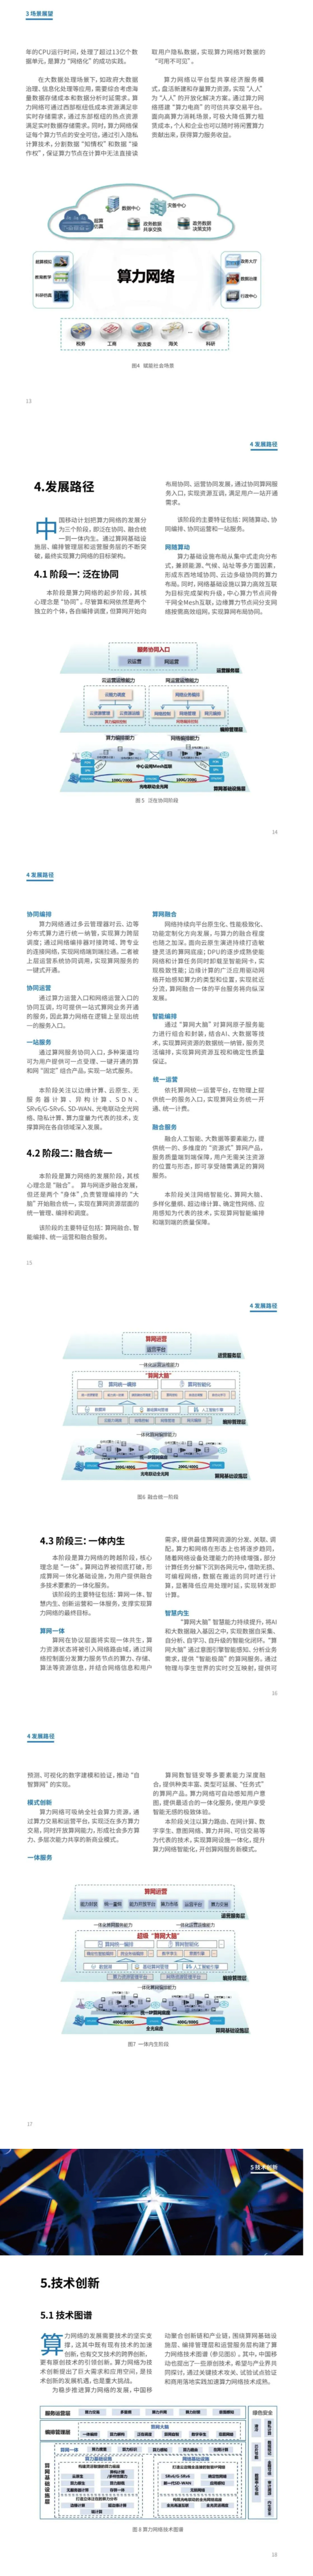 3-FireShot Capture 075 - 刚刚，中国移动在中国移动大会上发布《中国移动算力网络白皮书》！ - mp.weixin.qq.com.png